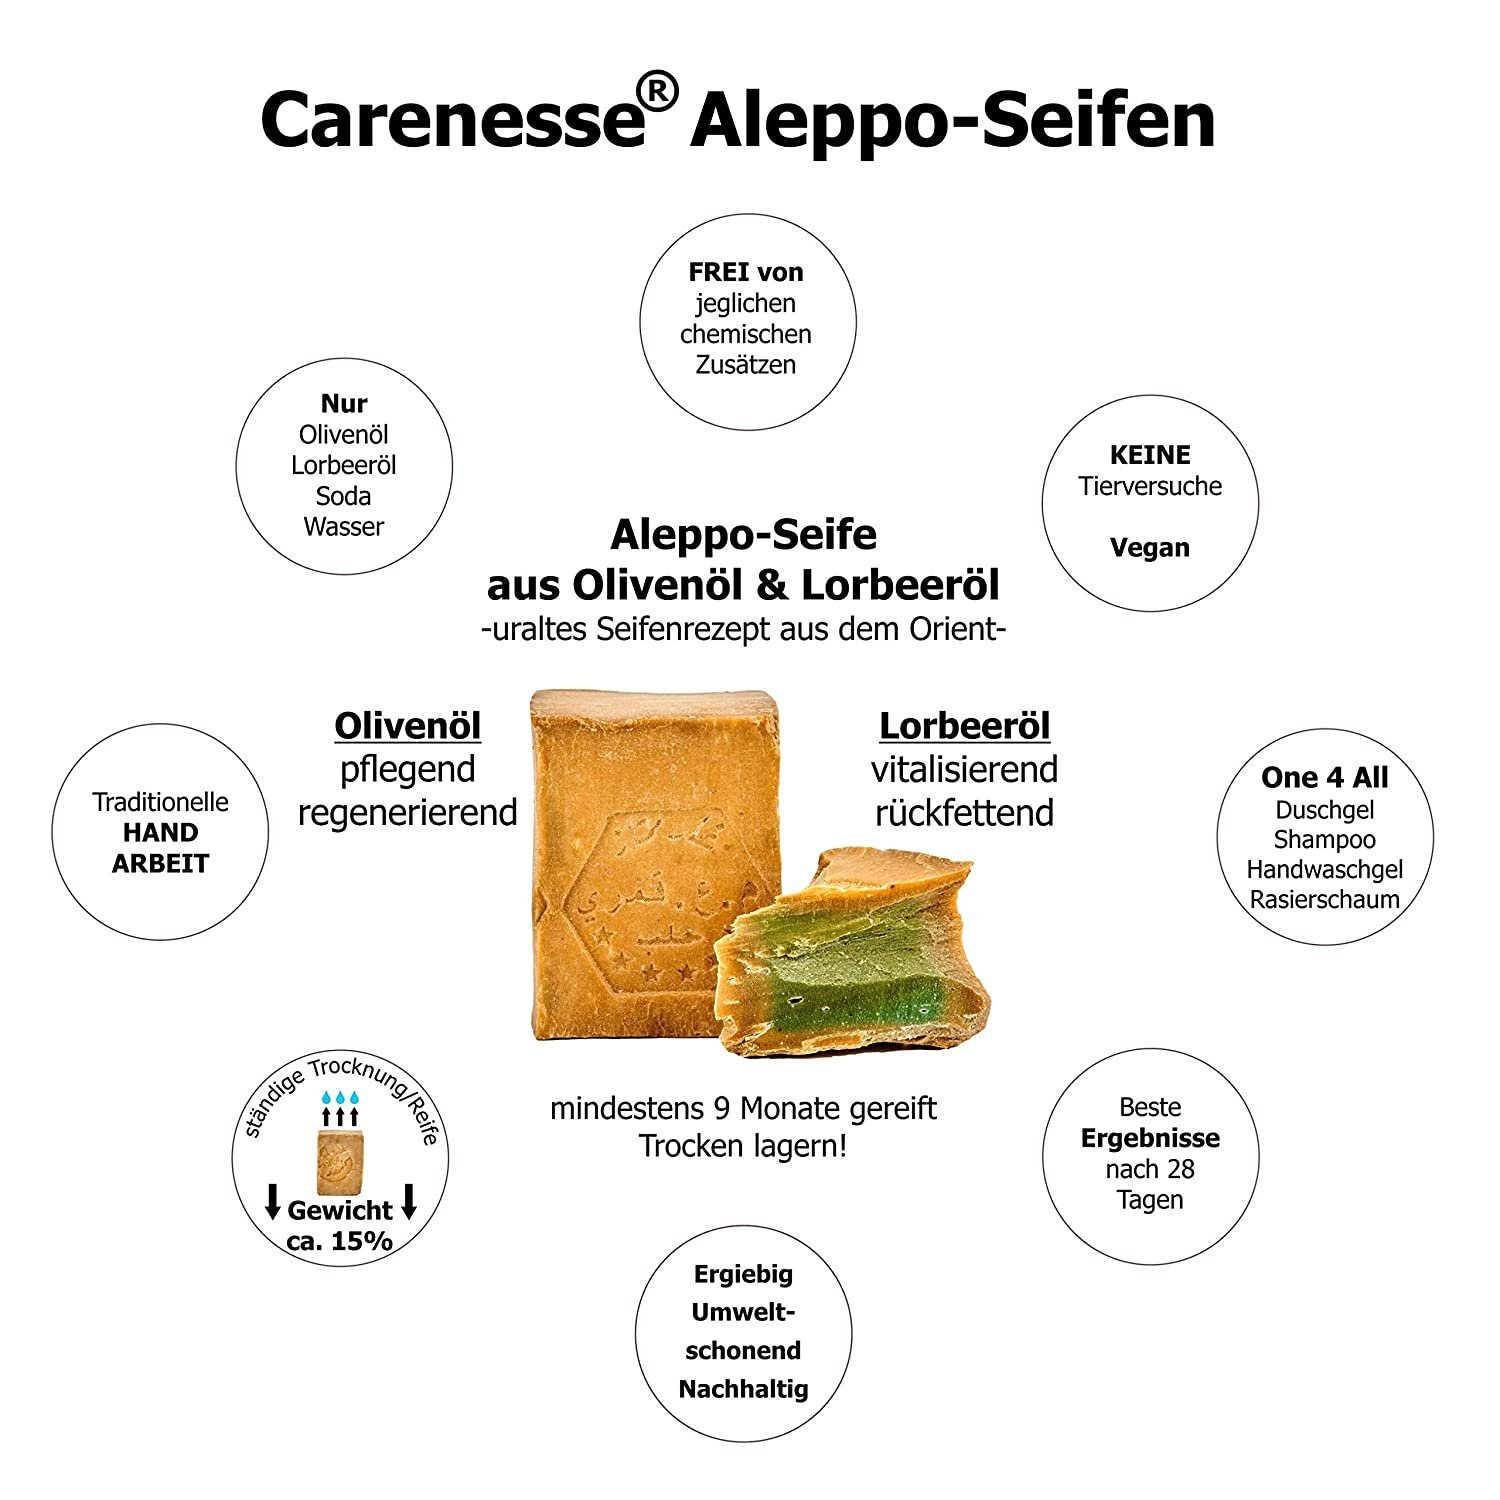 Carenesse Gesichtsseife Original Aleppo Seife Aleppo-Seife Lorbeerölseife 55% Handseife Olivenölseife, Olivenöl, 45% Lorbeeröl & Haarseife Alepposeife